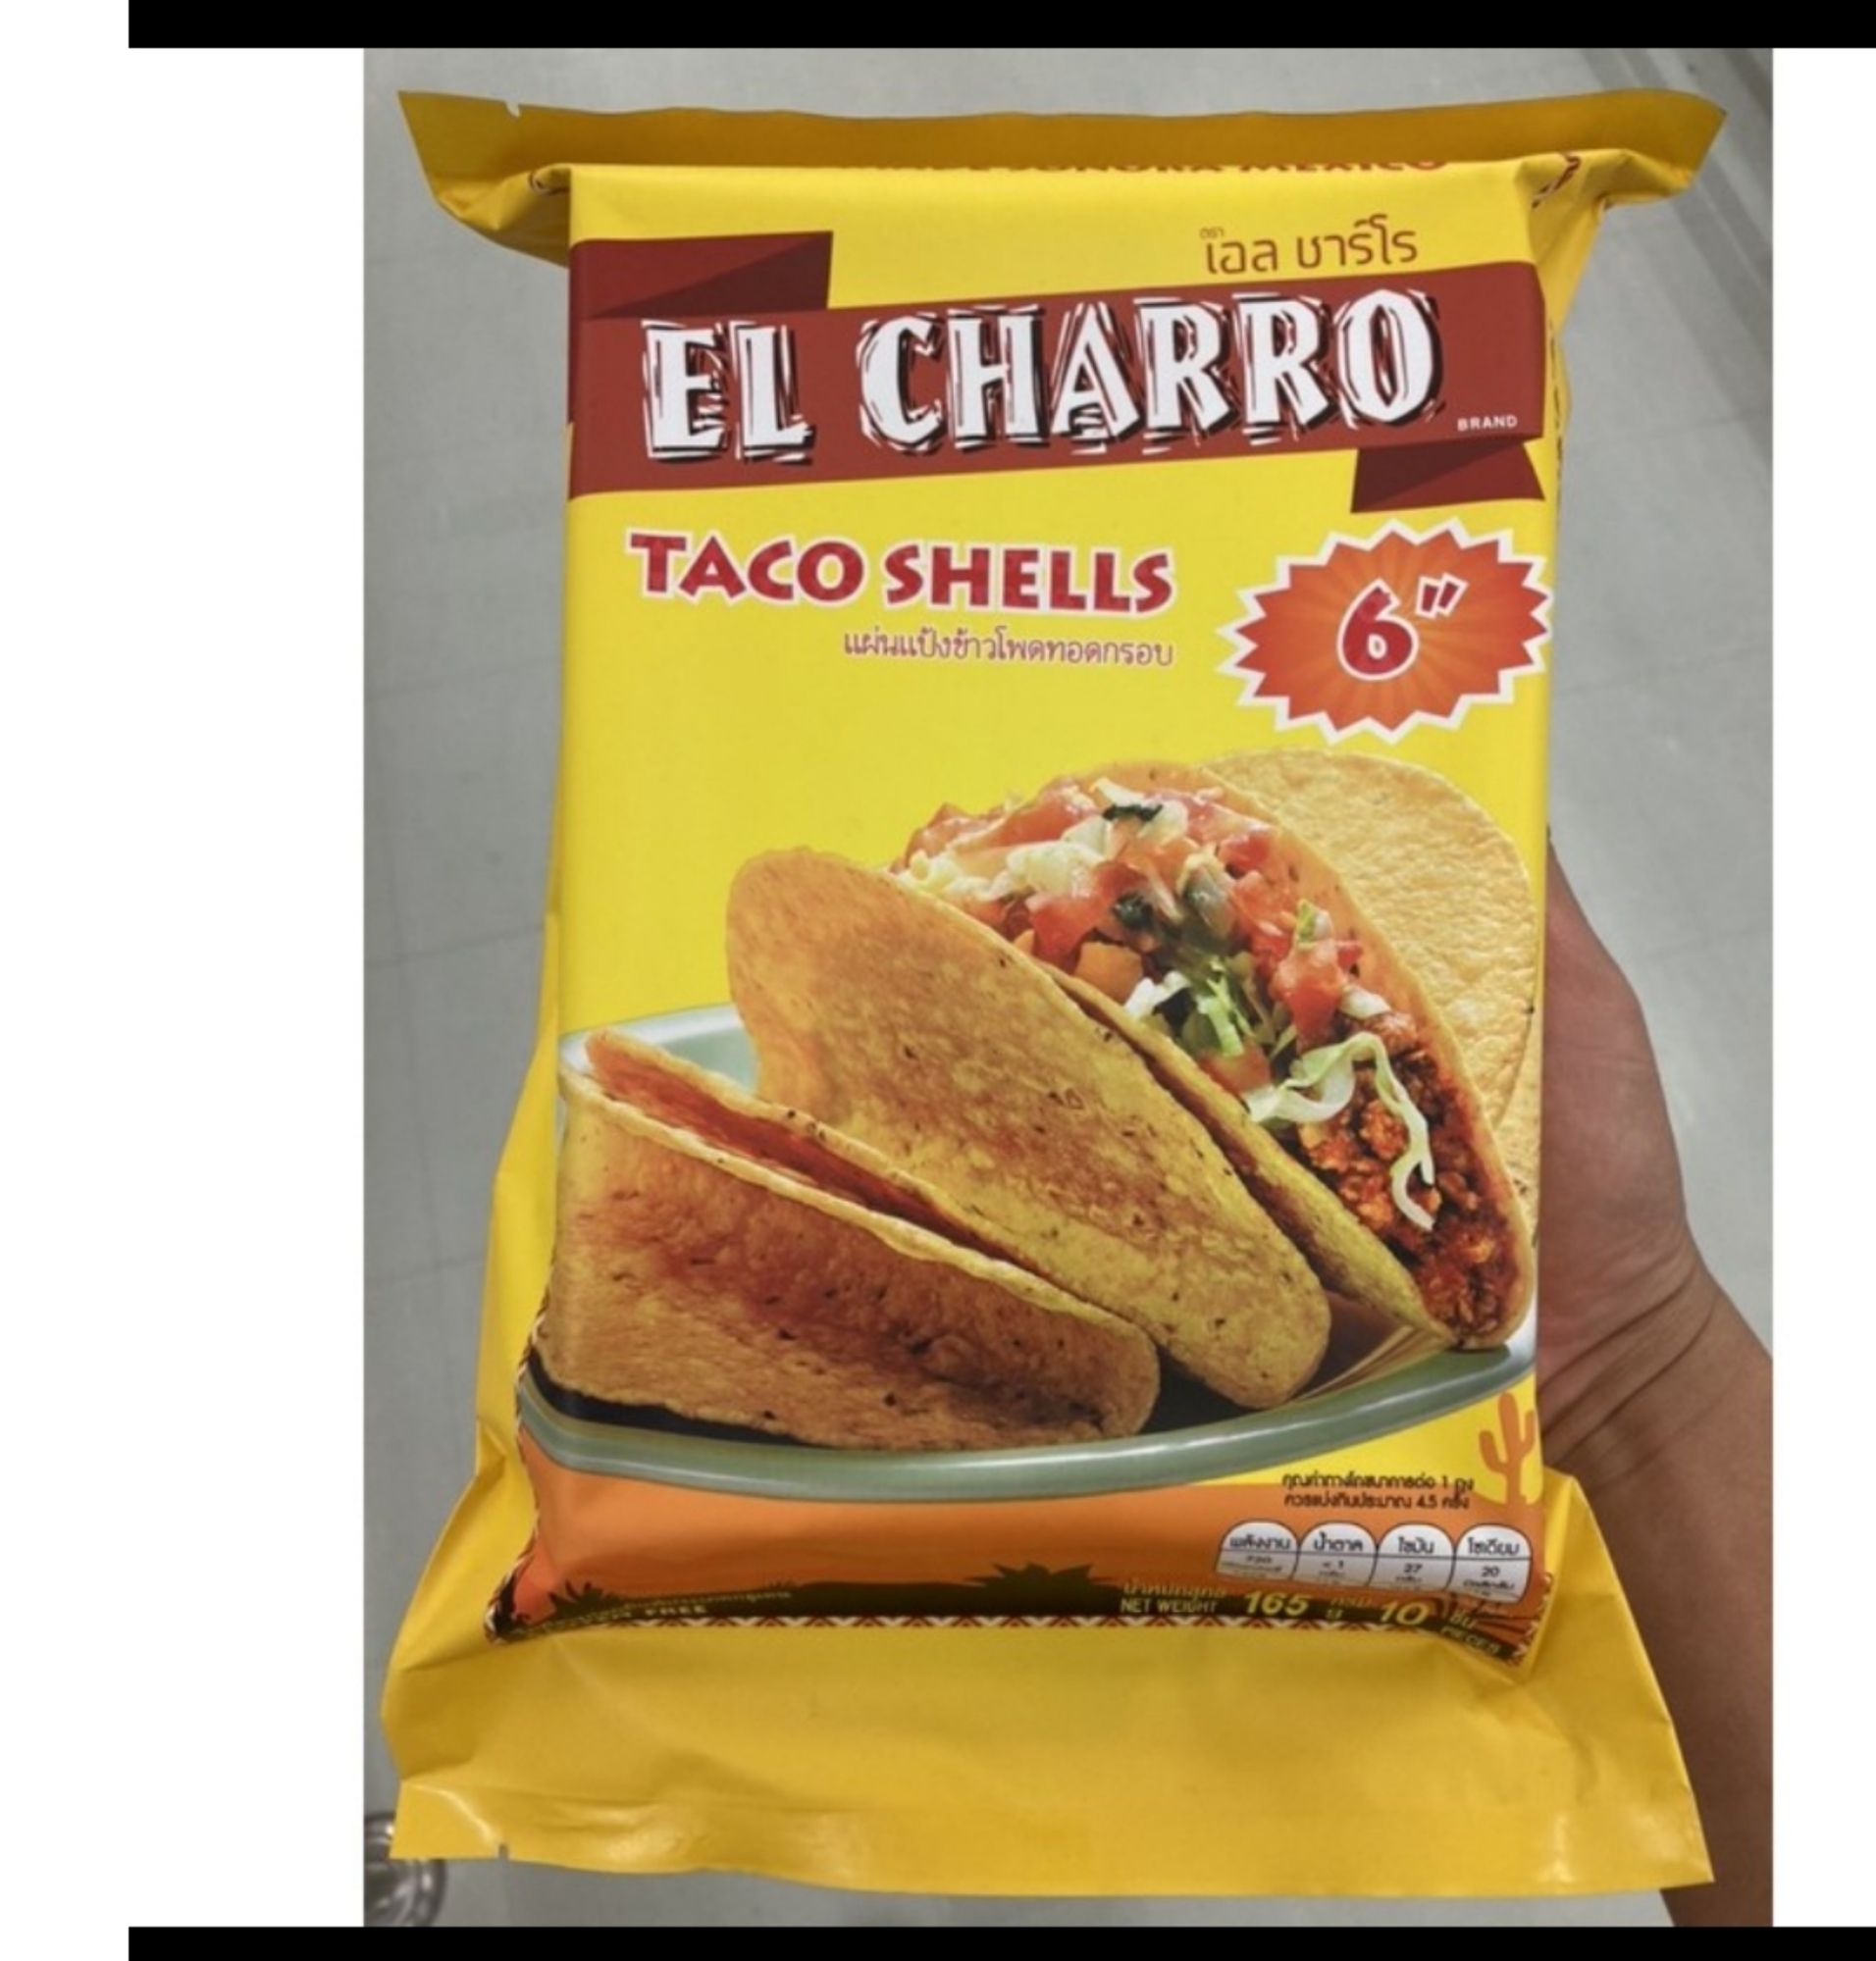 ทาโก้เชลล์ 6 นิ้ว เอลชาโร 165 กรัม Taco shells6 EL charro 165 g